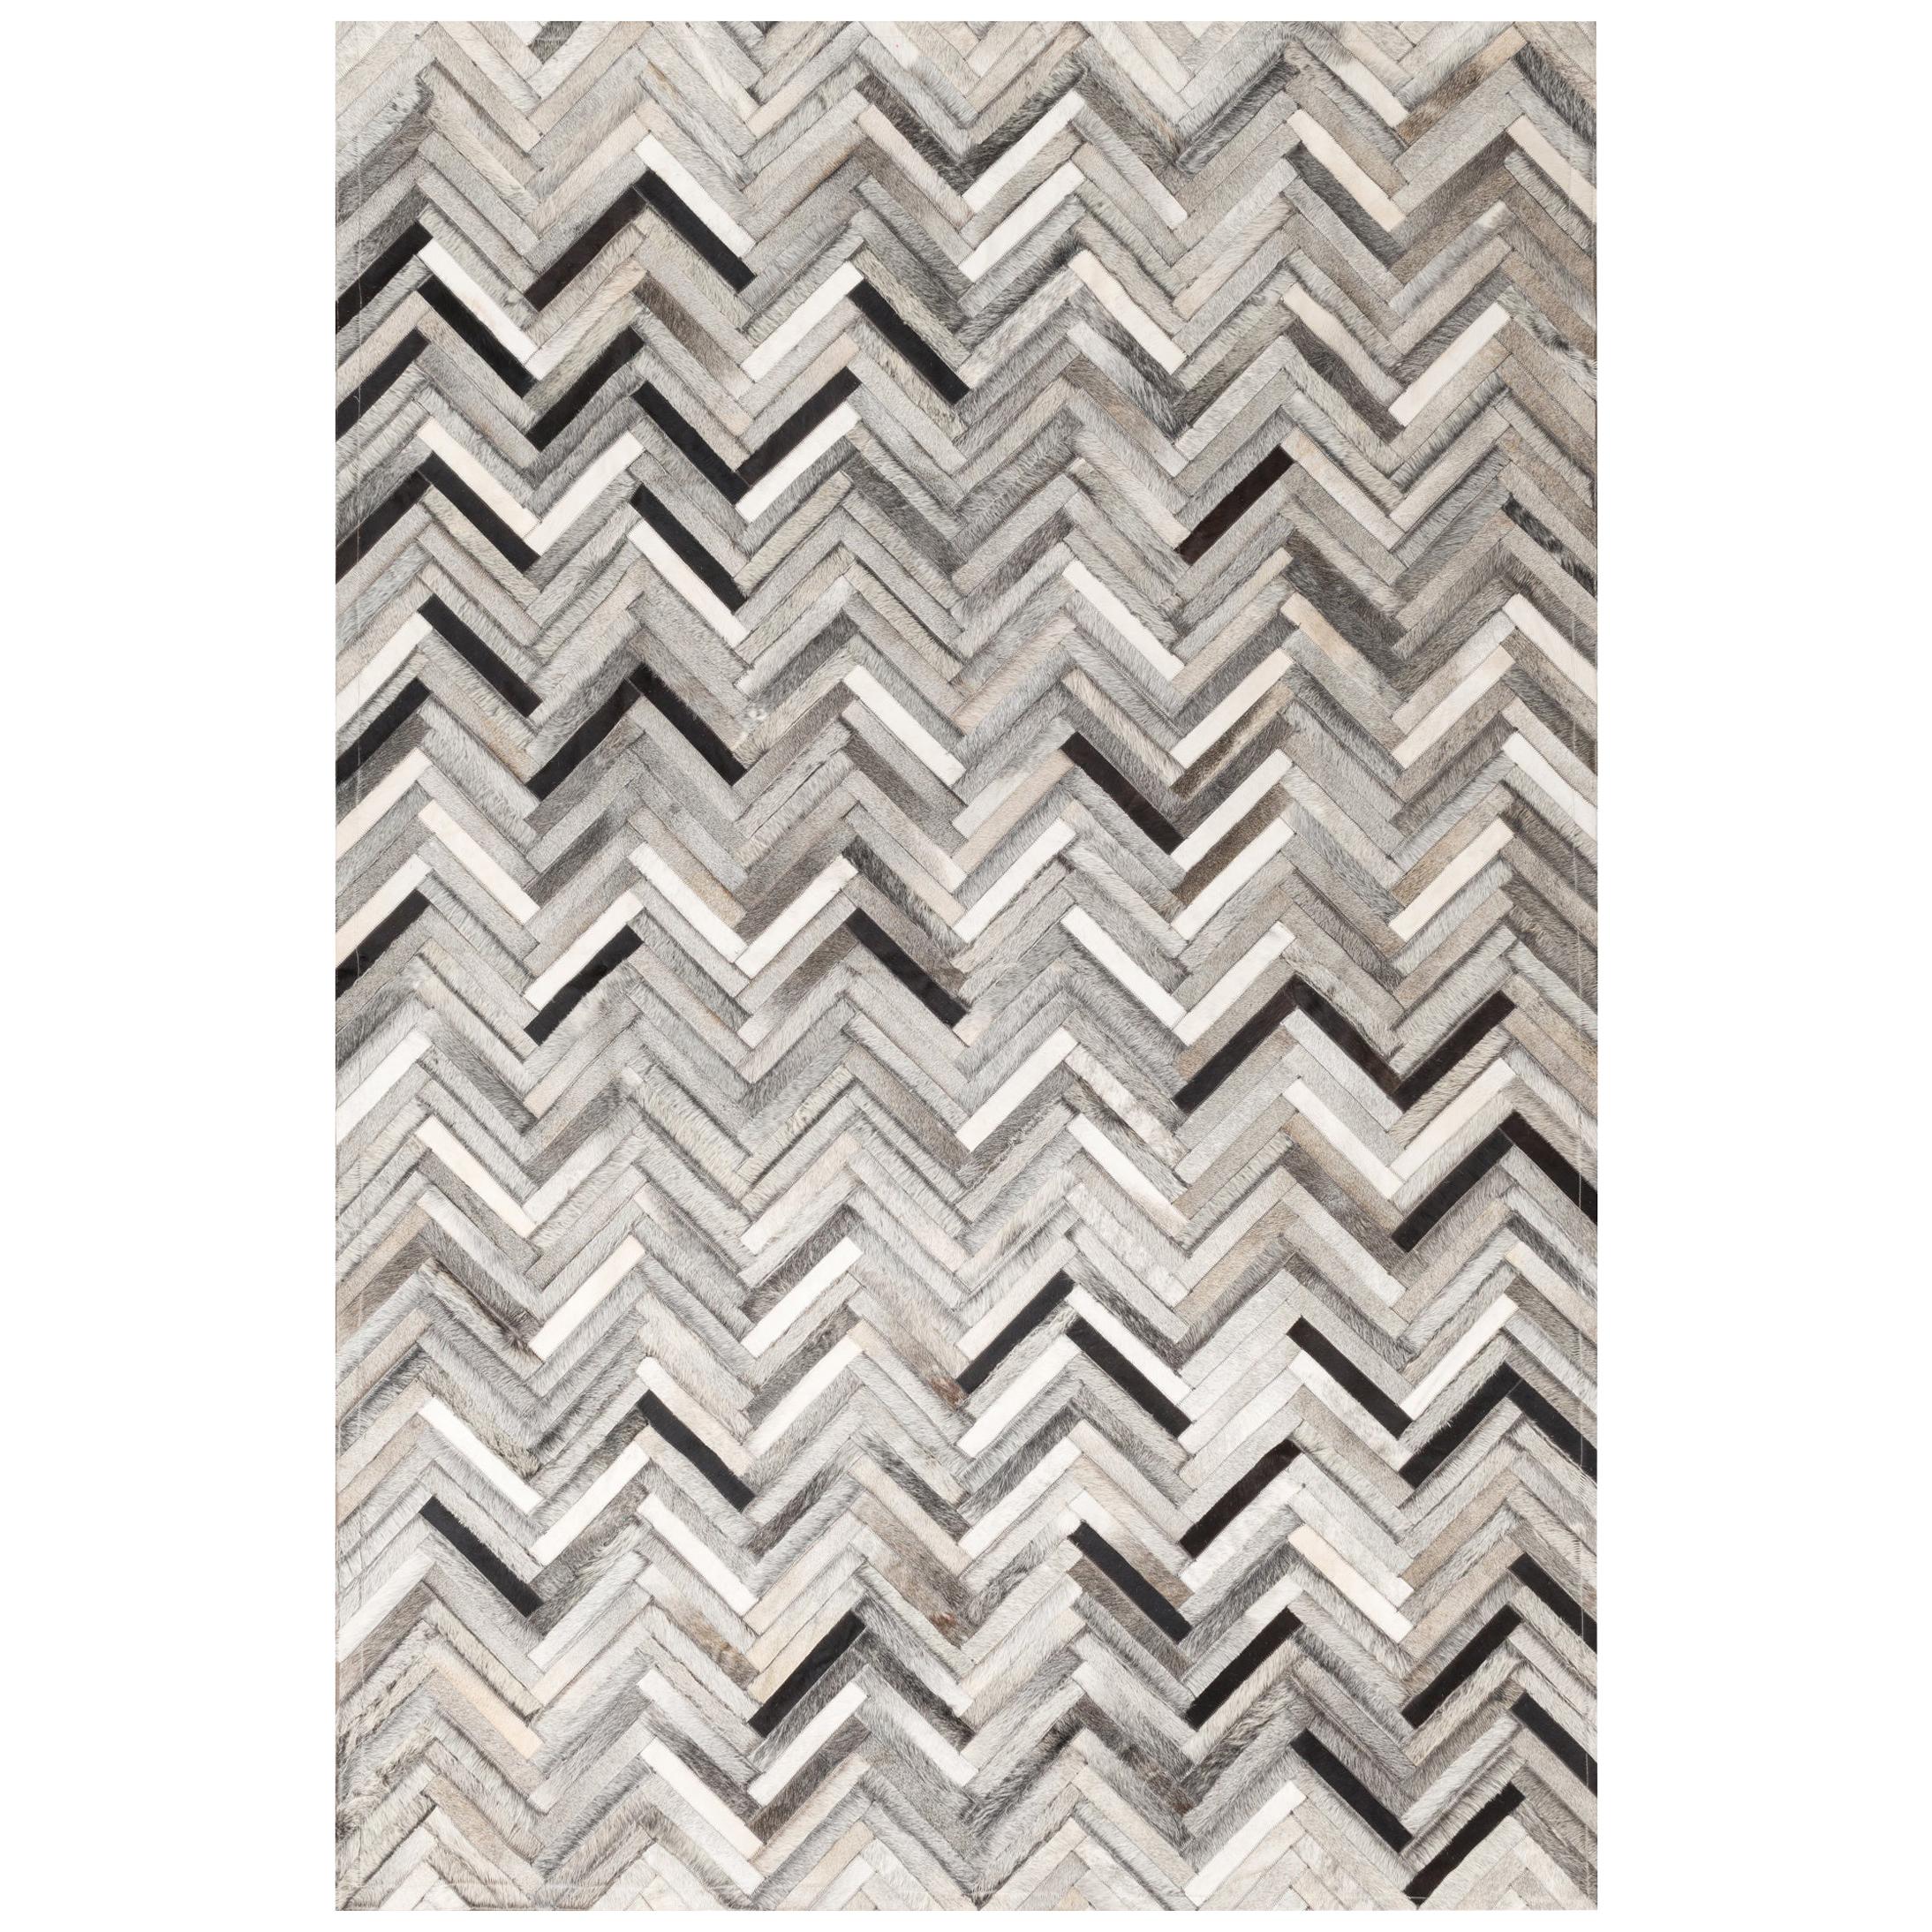 Herringbone gray, white & black Luxurious El Cielo Cowhide Area Floor Rug Small